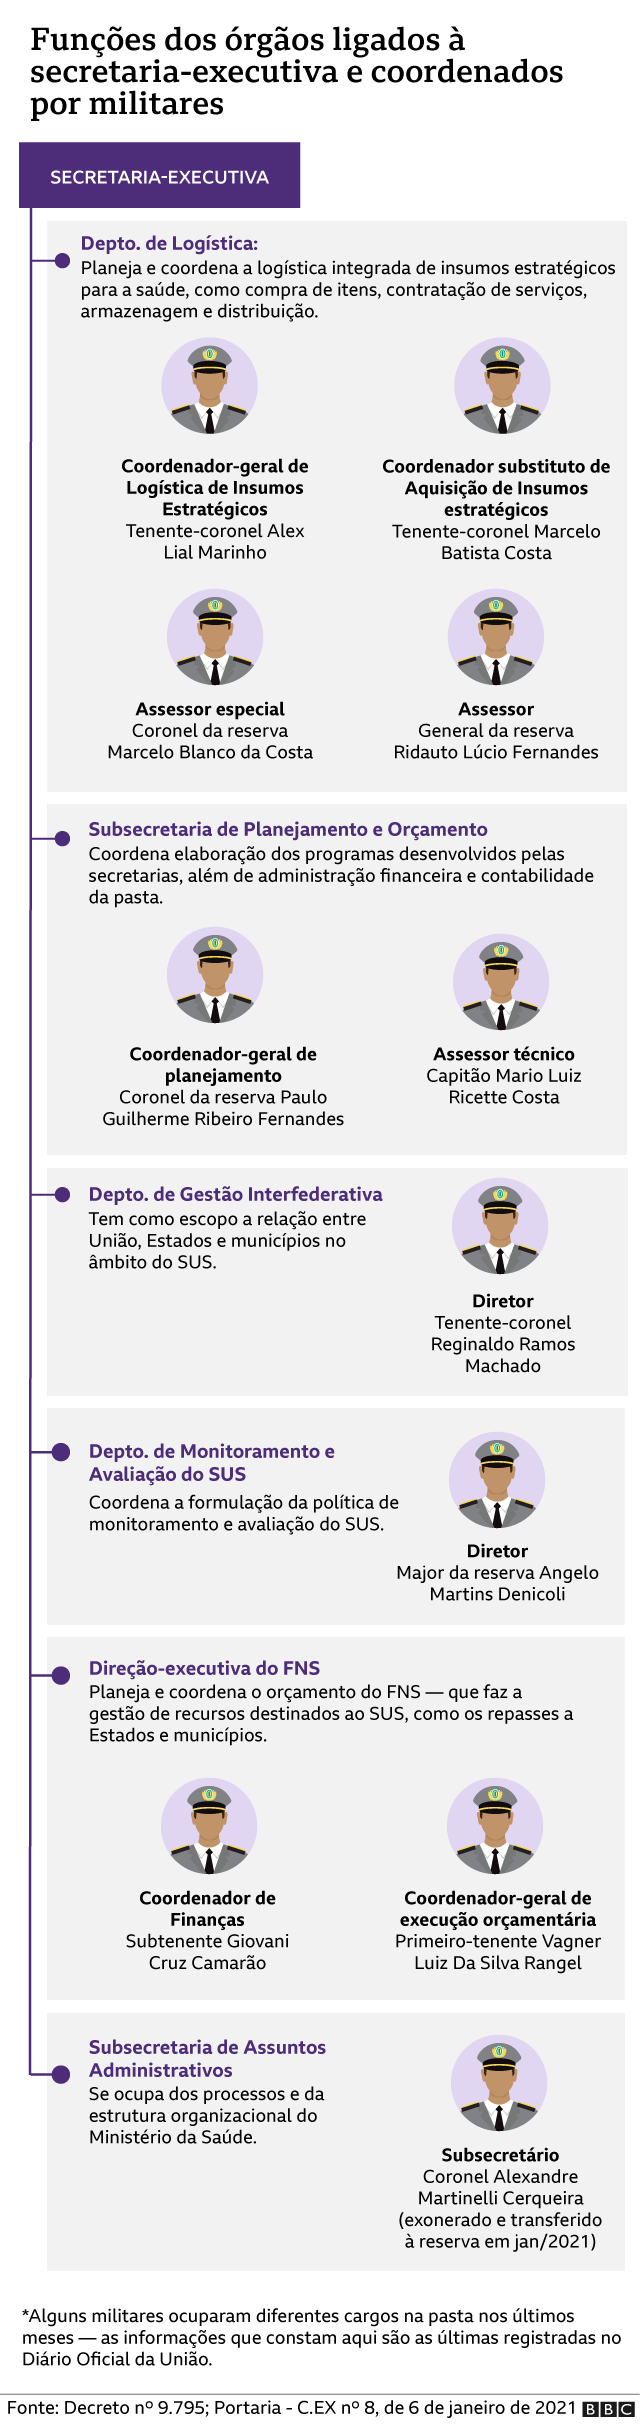 Gráfico detalha funções de órgãos da secretaria-executiva do Ministério da Saúde chefiados por militares